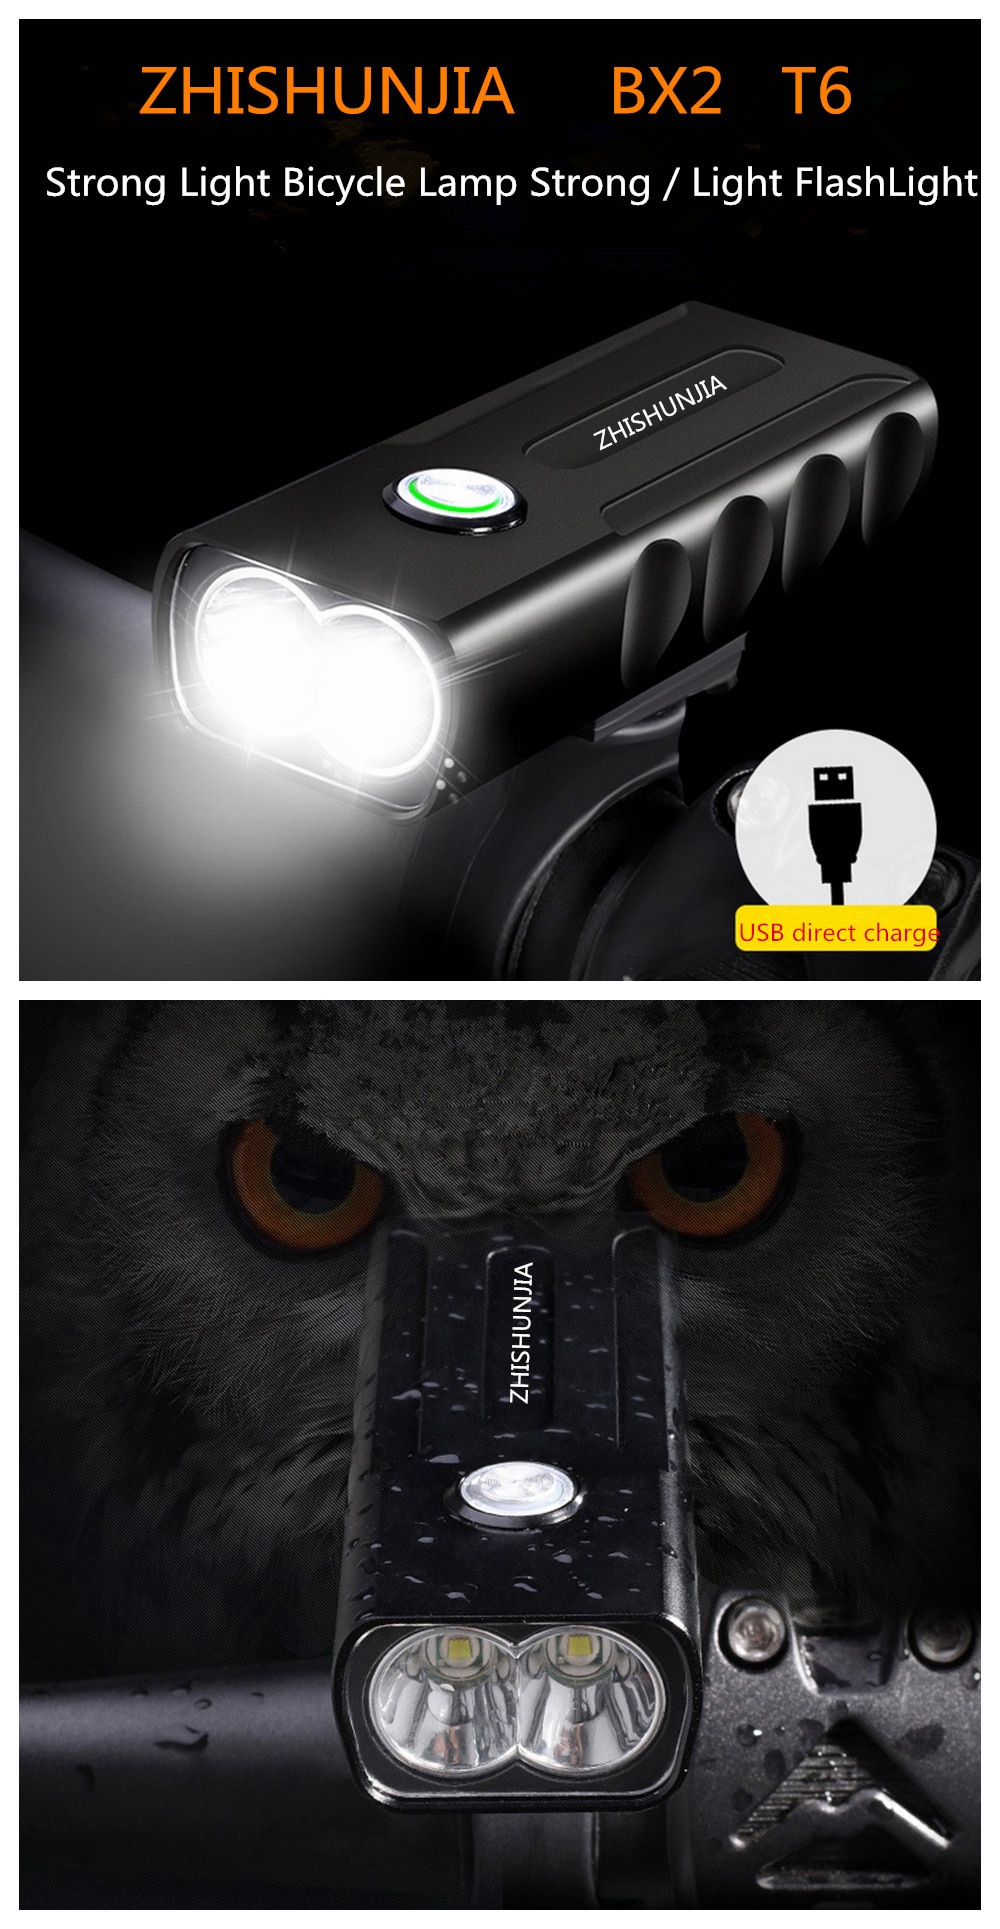 ZHISZHISHUNJIA BX2 1600lm 3-Mode LED Flashlight USB Rechargeable Bicycle Lamp- Black